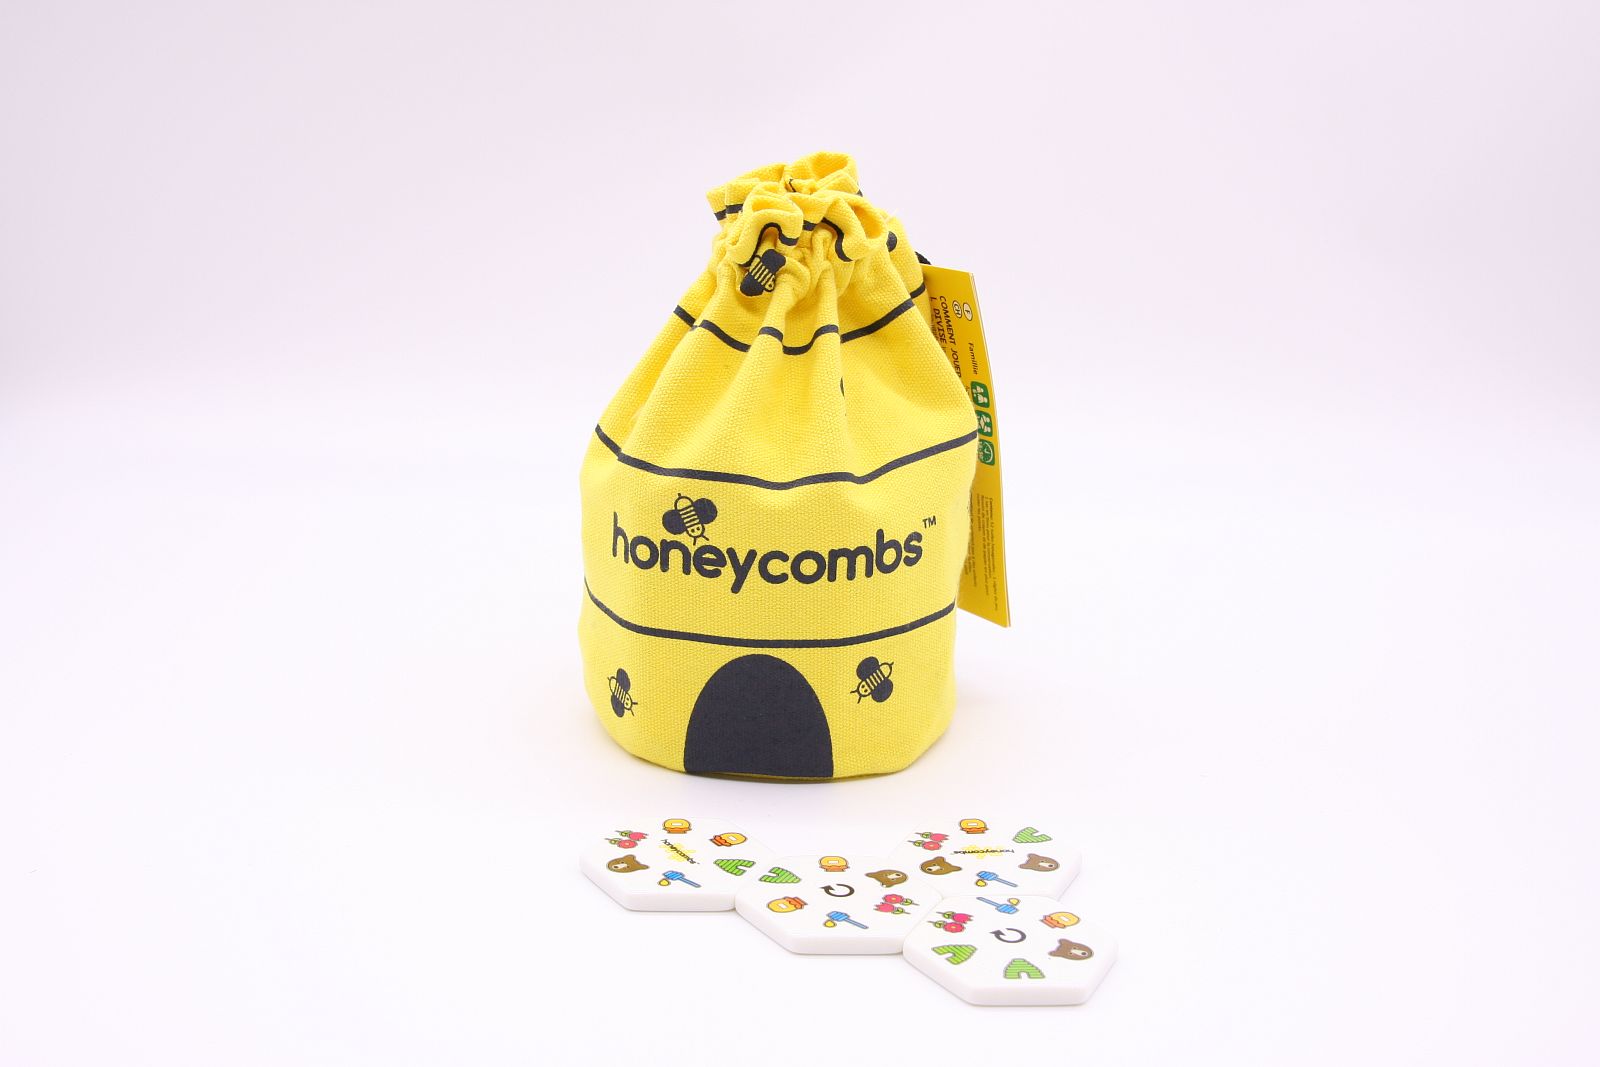 Honeycombs "Domino"